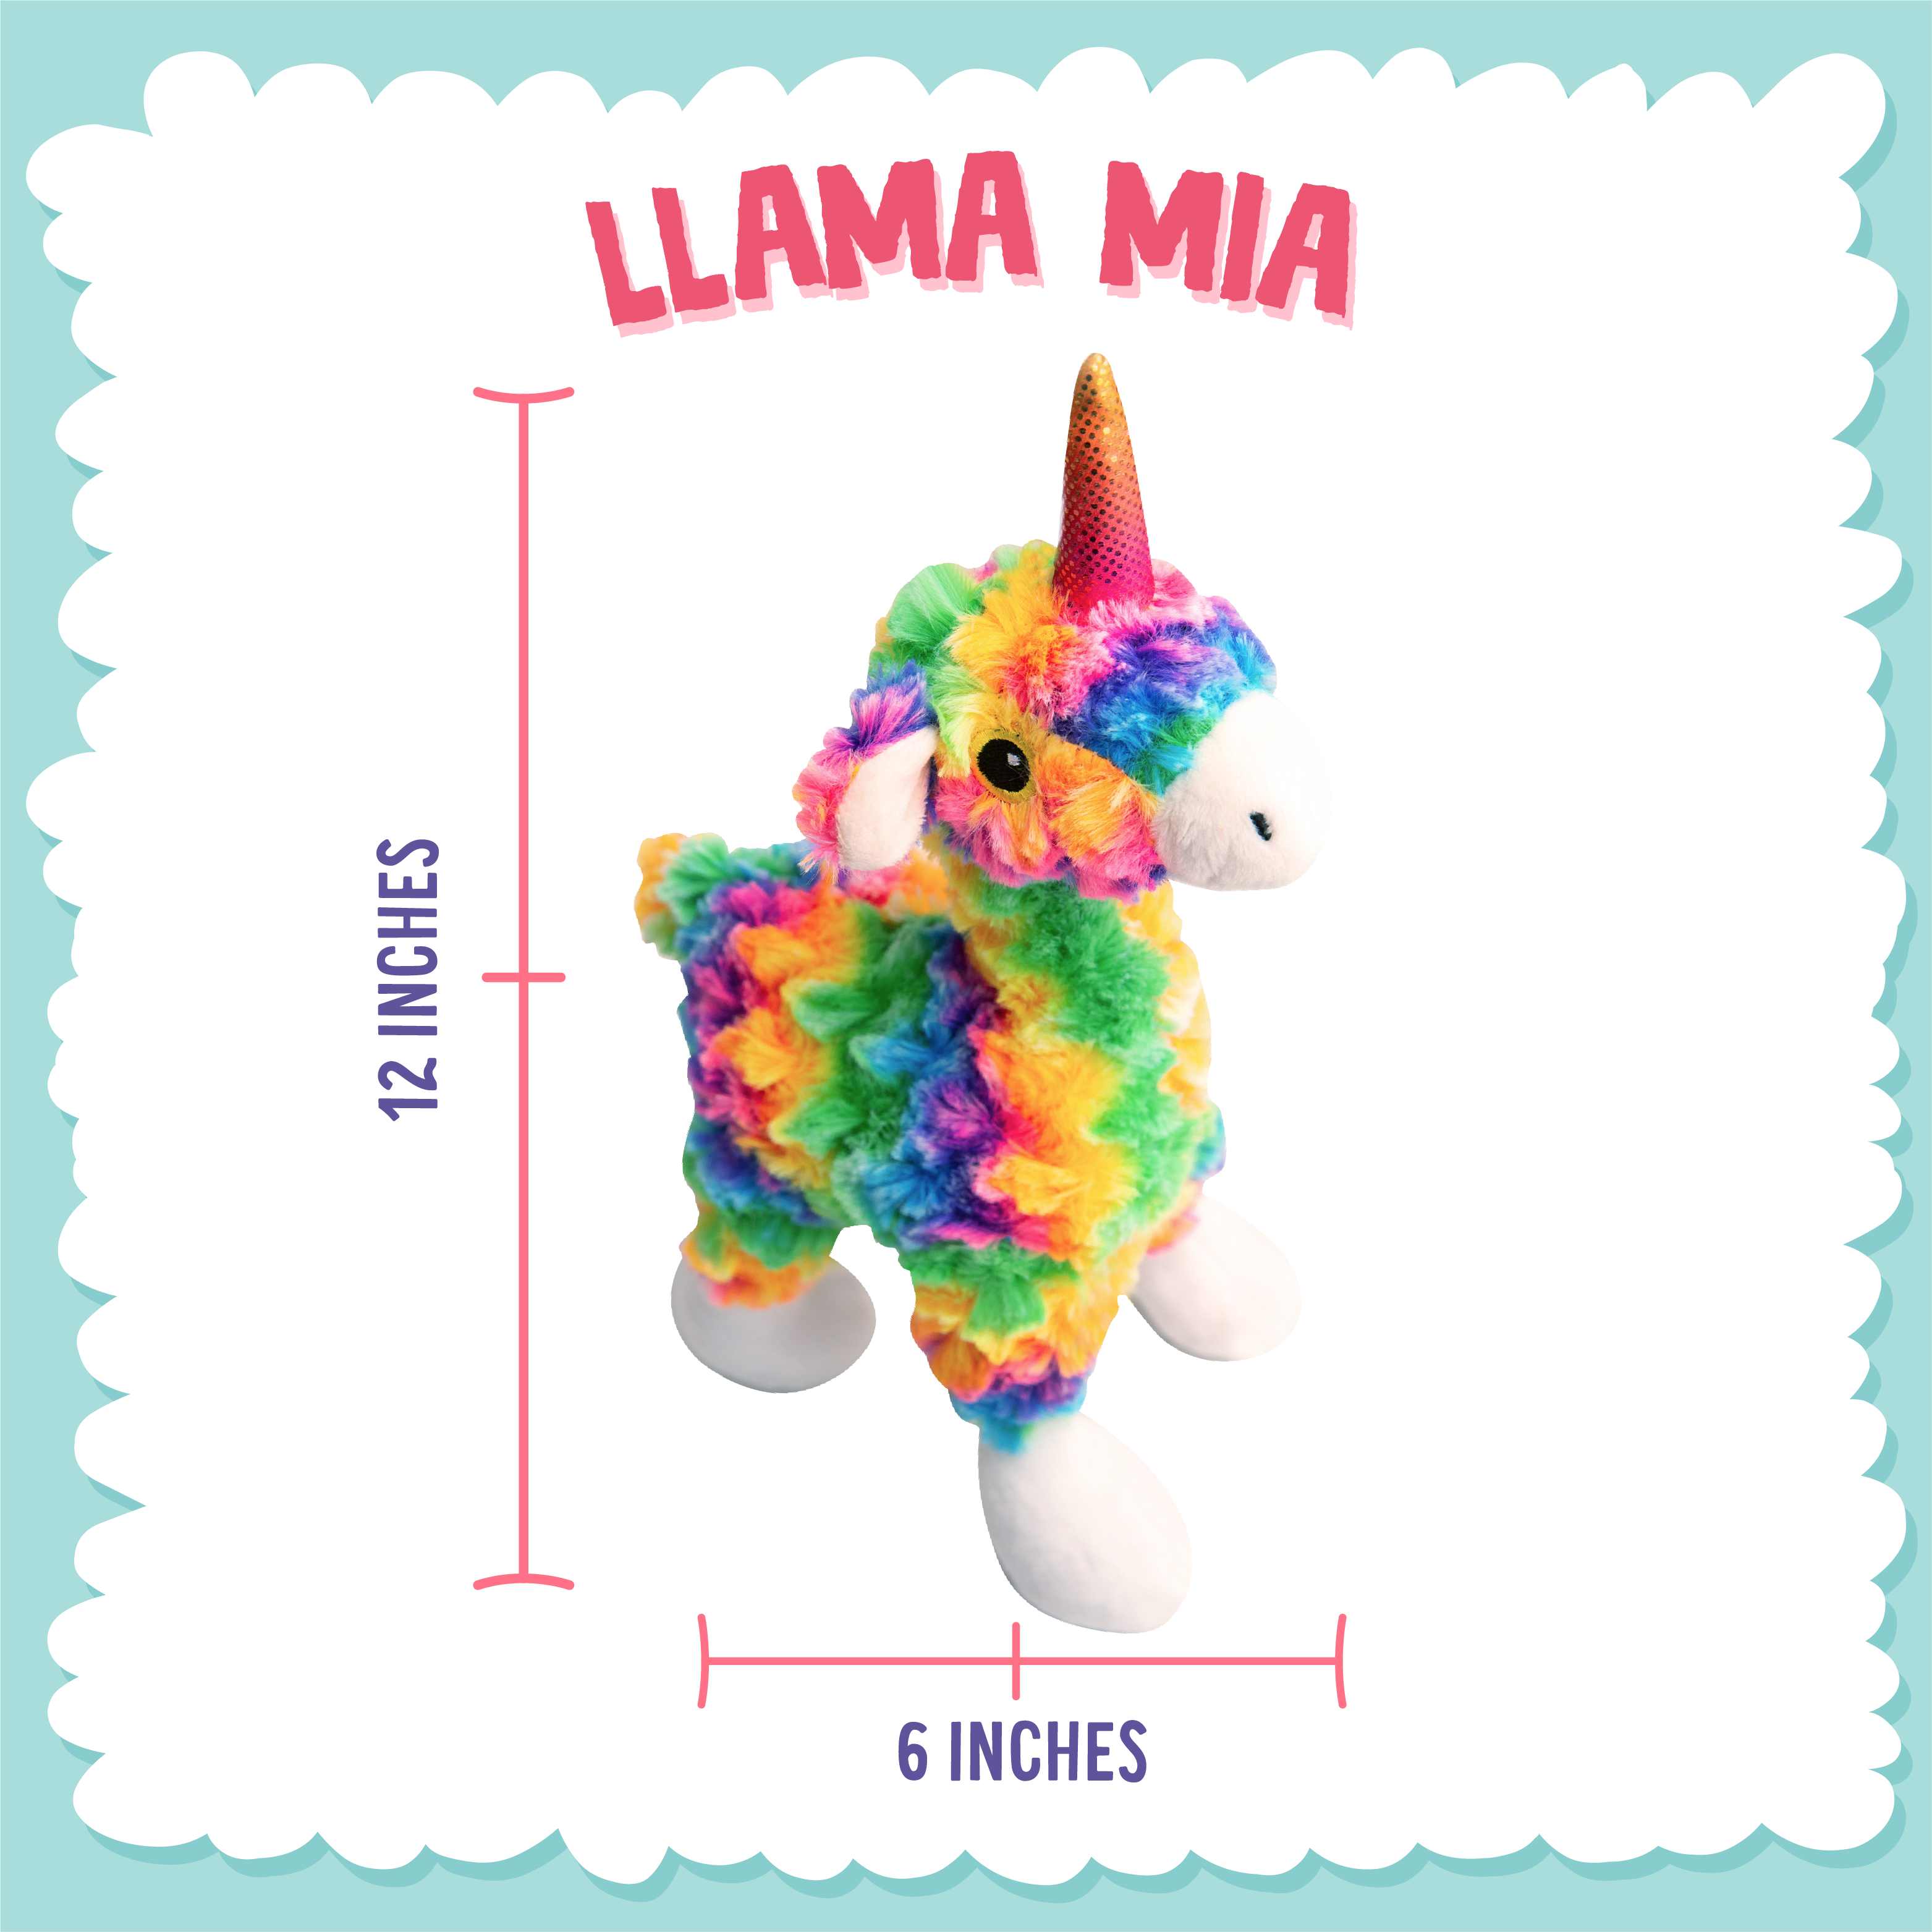 Llama Mia